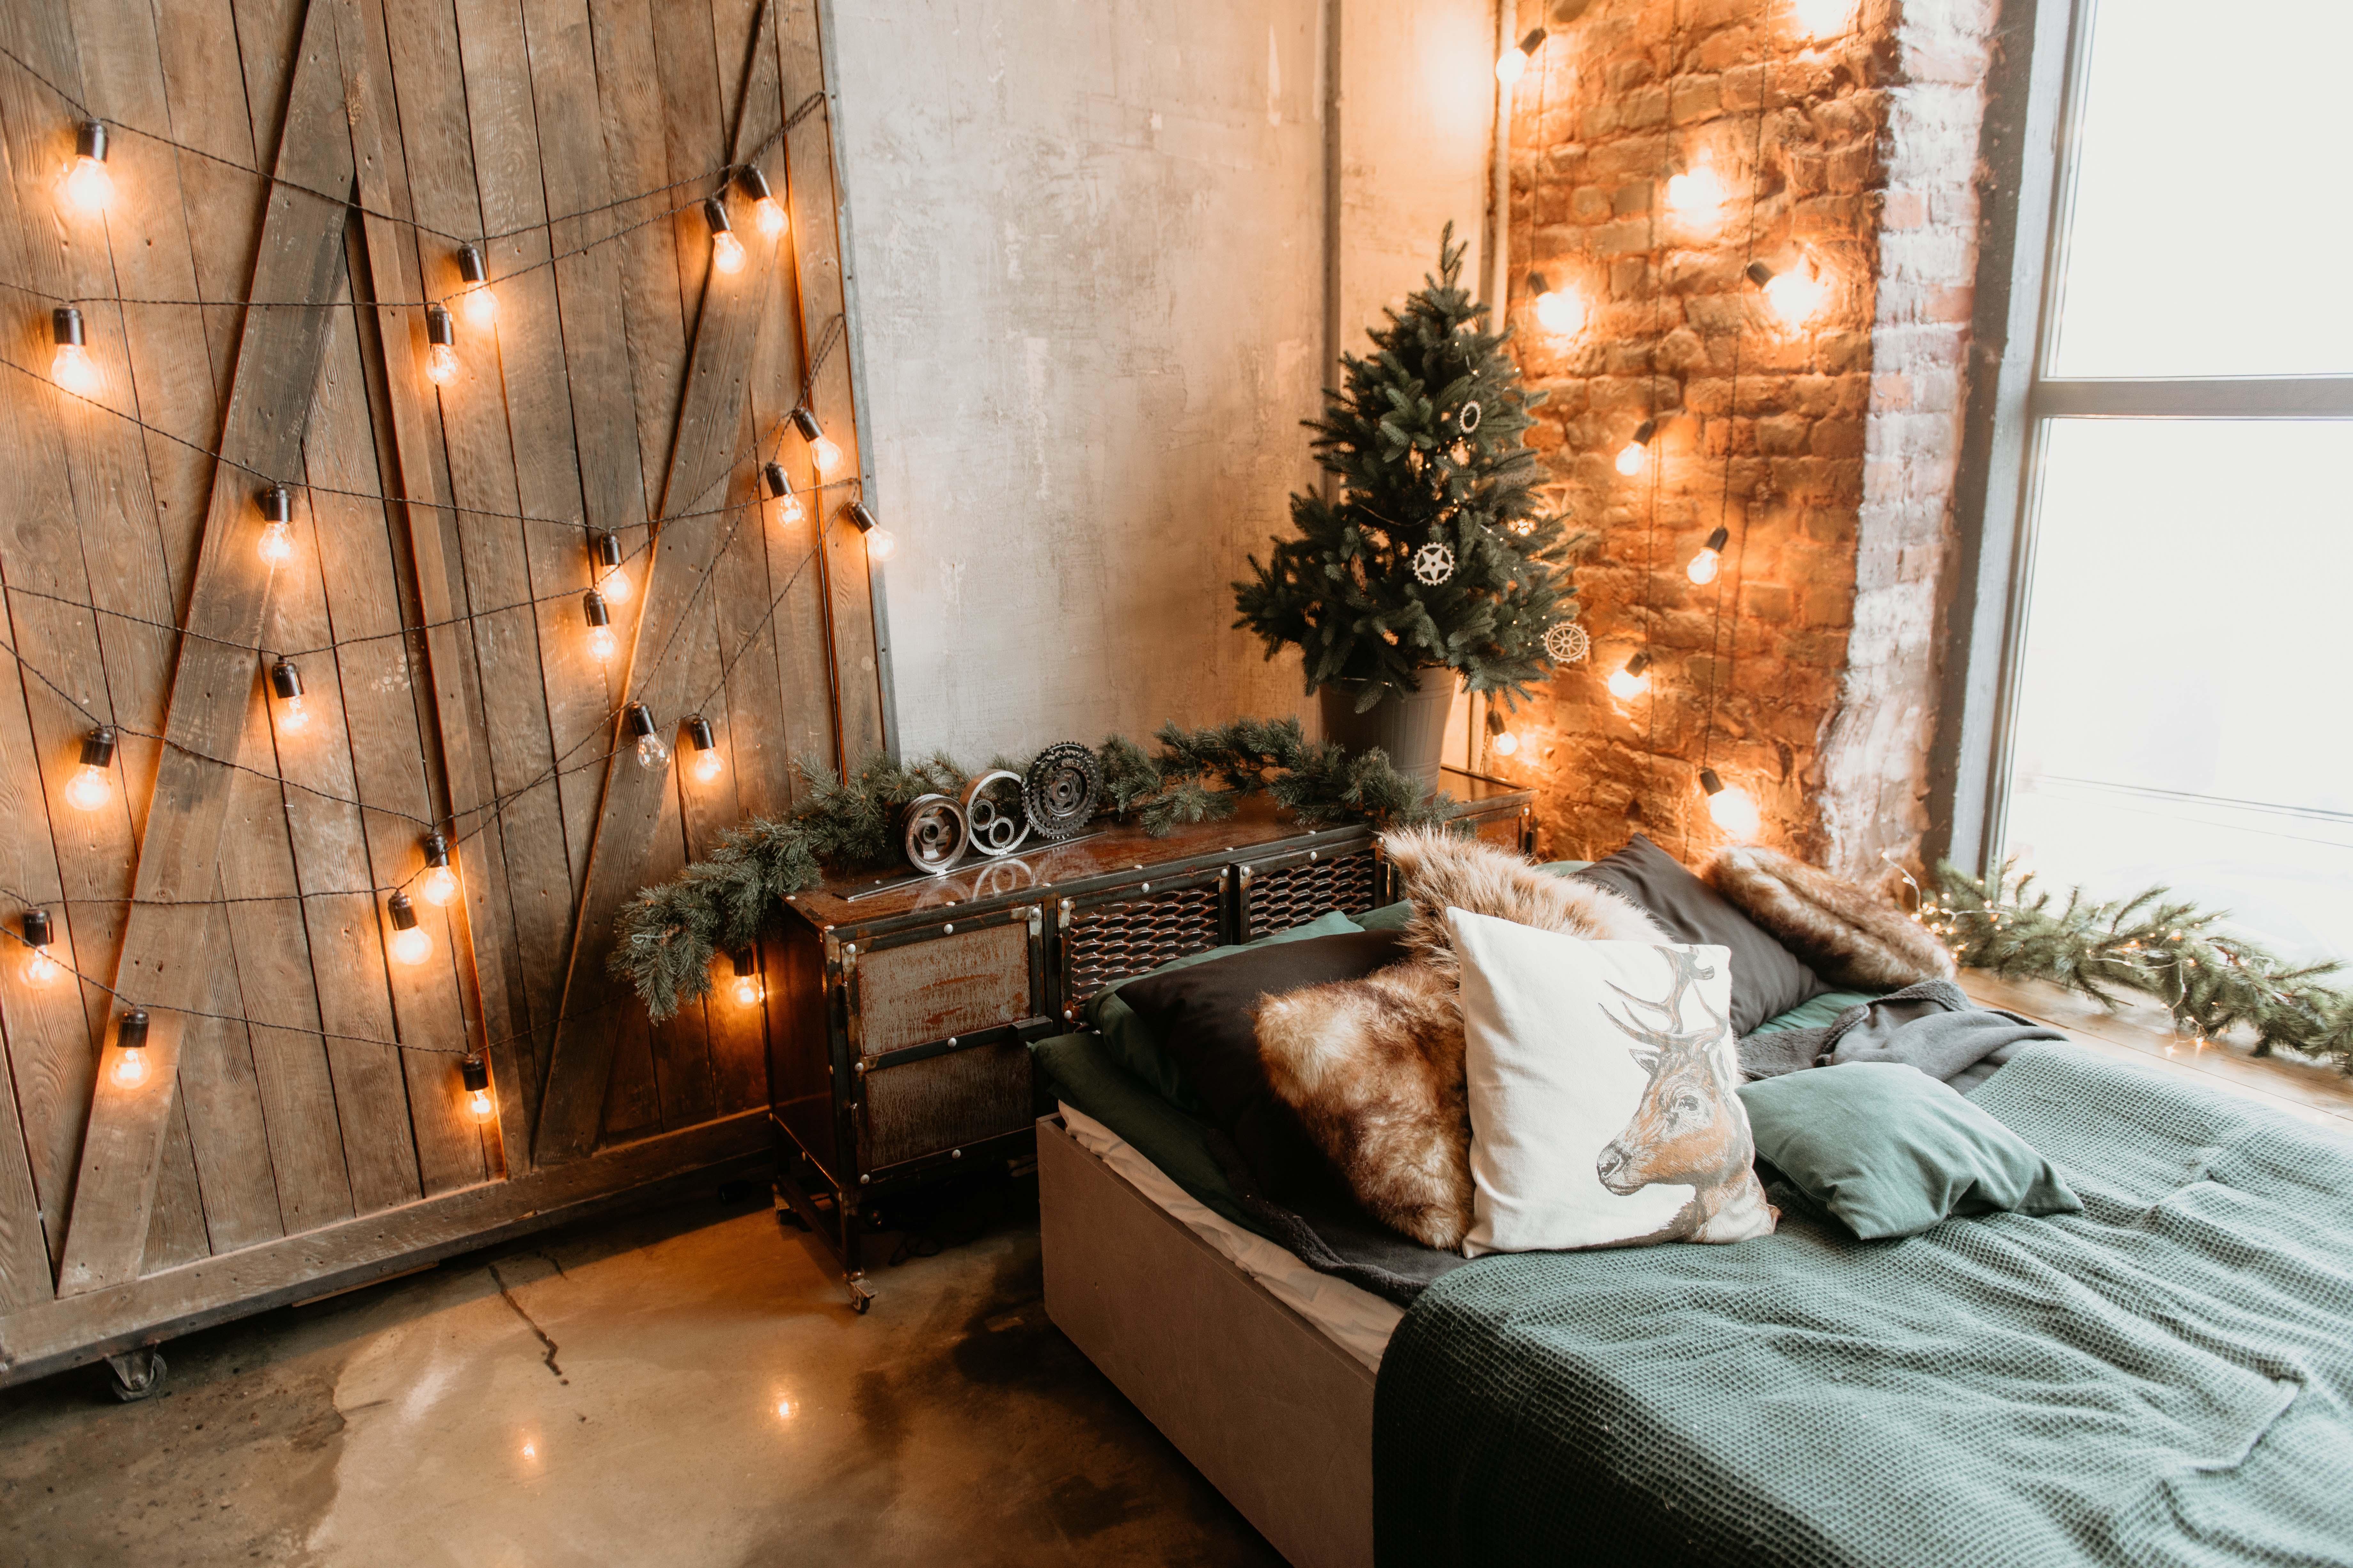 INSPIRATIE: 18 creatieve ideeën om kot of kamer klaar te maken voor de kerstperiode